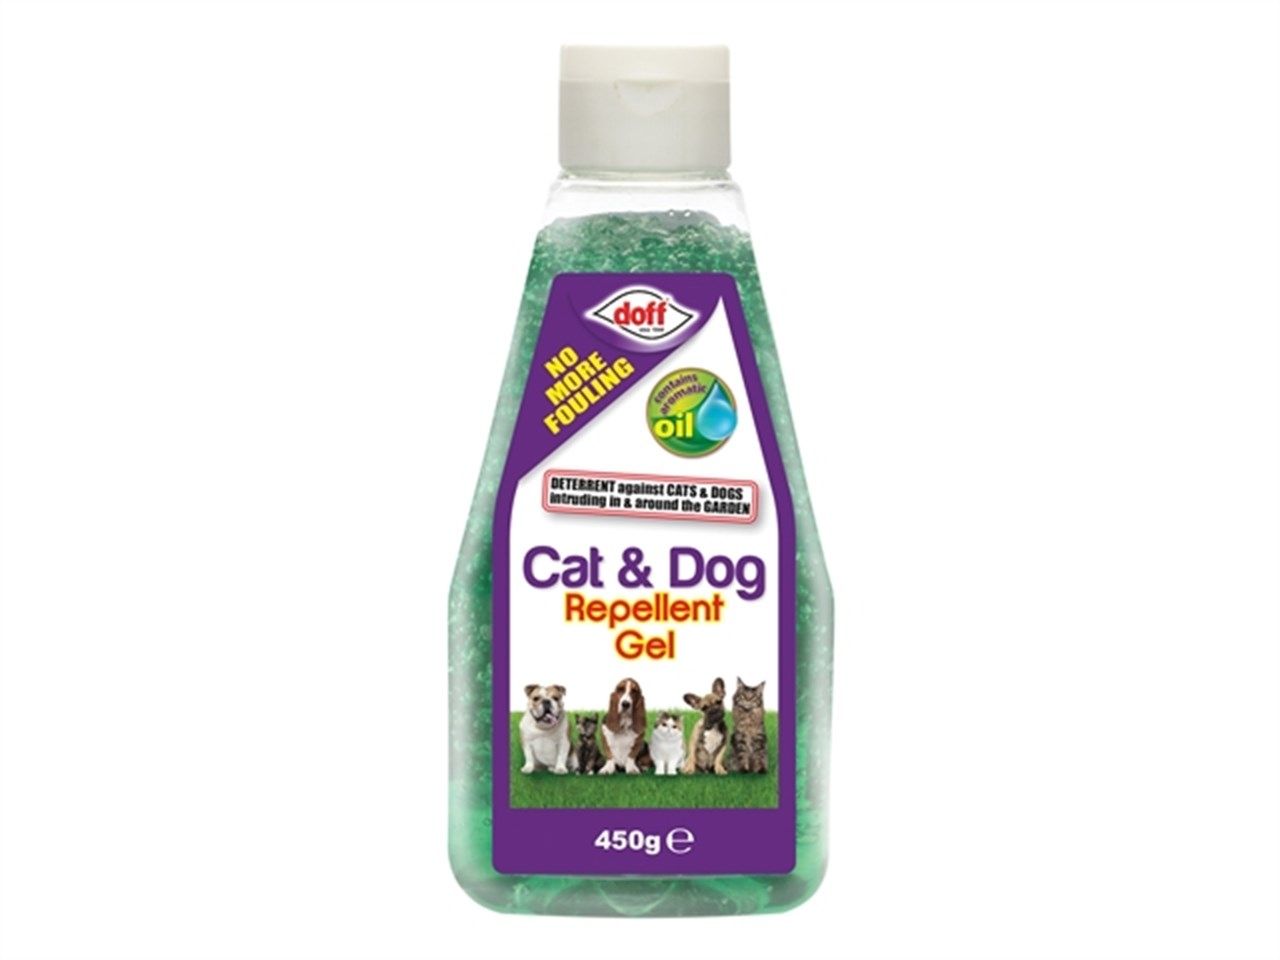 ****Doff Cat & Dog Repellent Gel 450g.